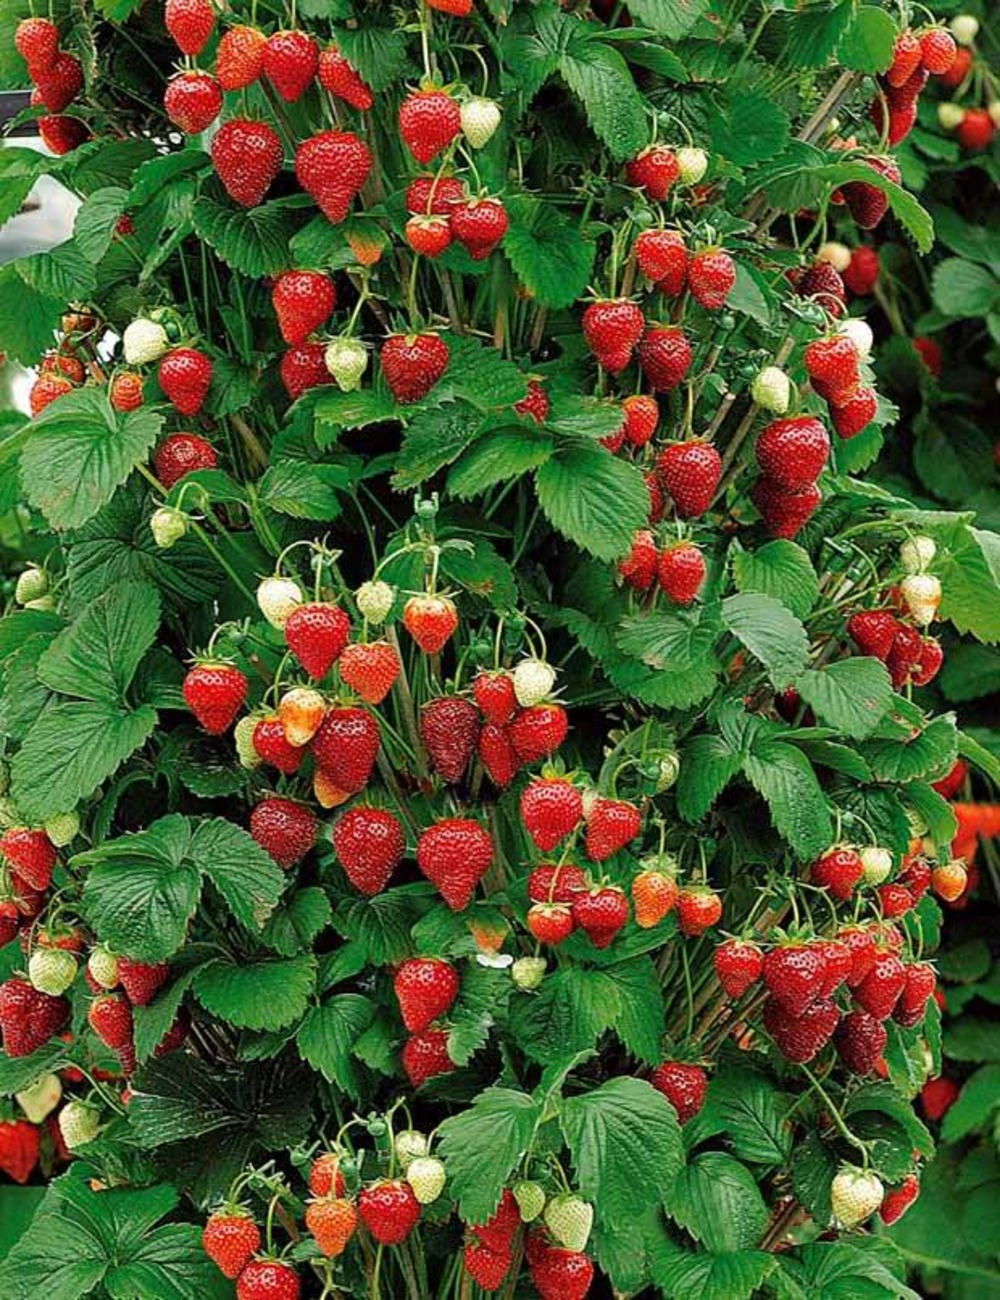 10 fraisiers grimpants et remontants mount everest, le paquet de 10 racines nues